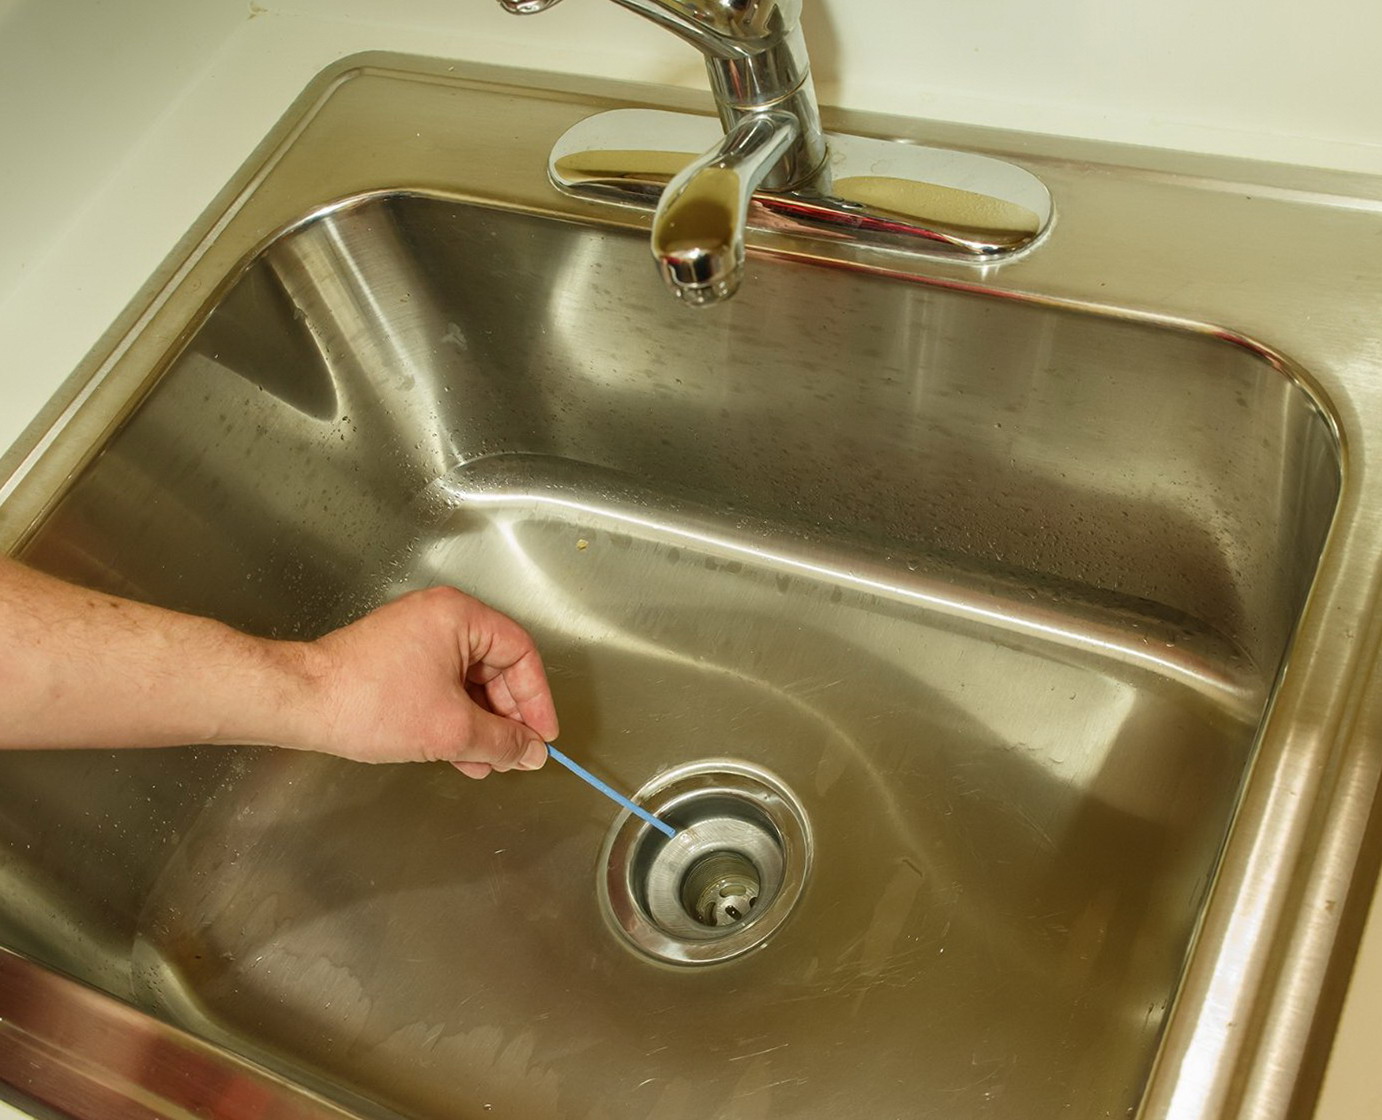 Воняет из раковины на кухне канализацией — что делать и как устранить?